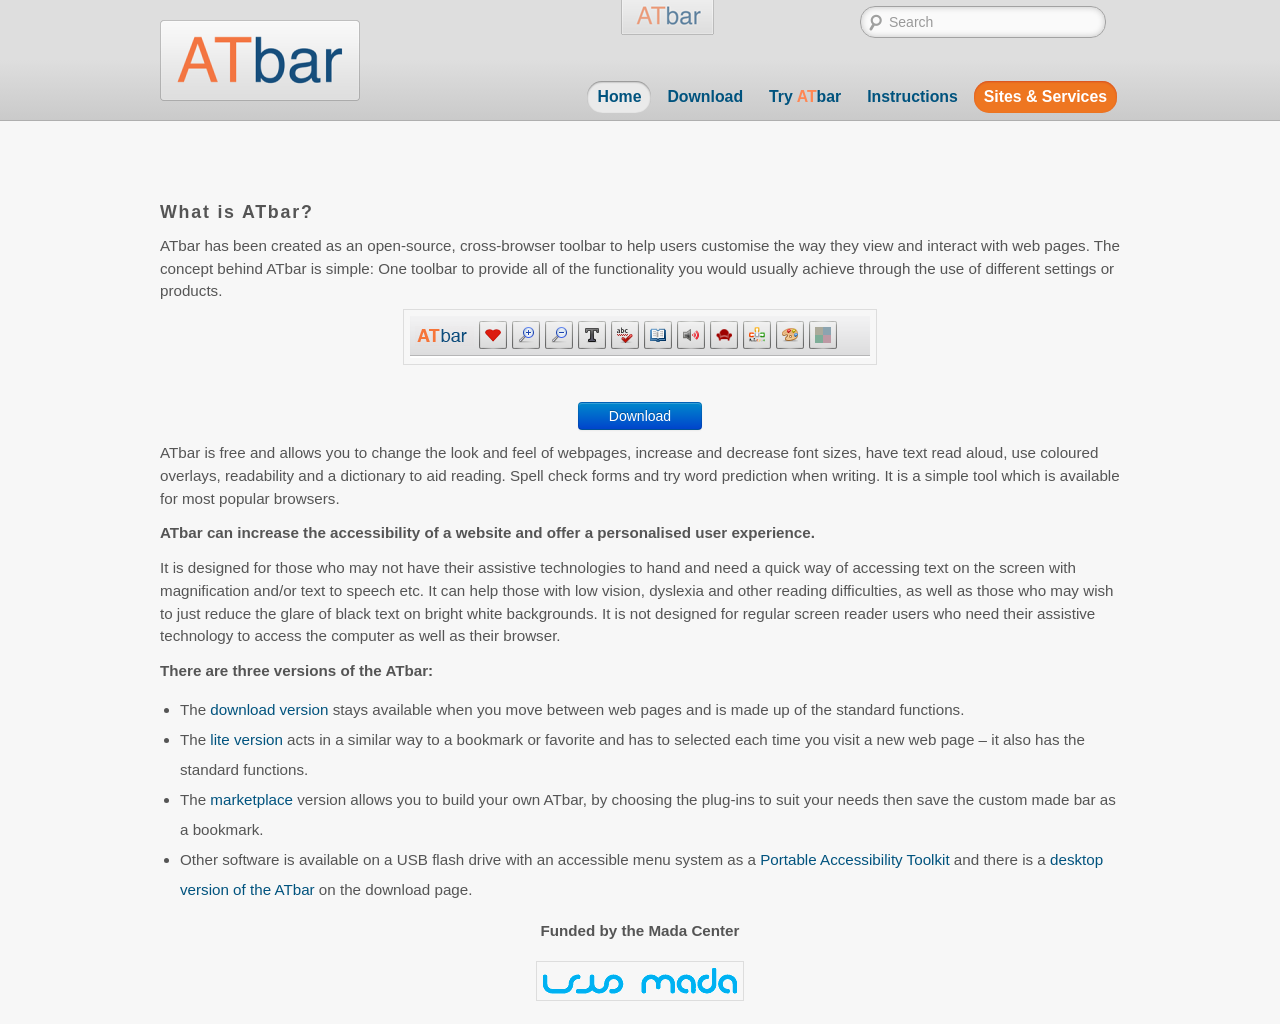 atbar.org